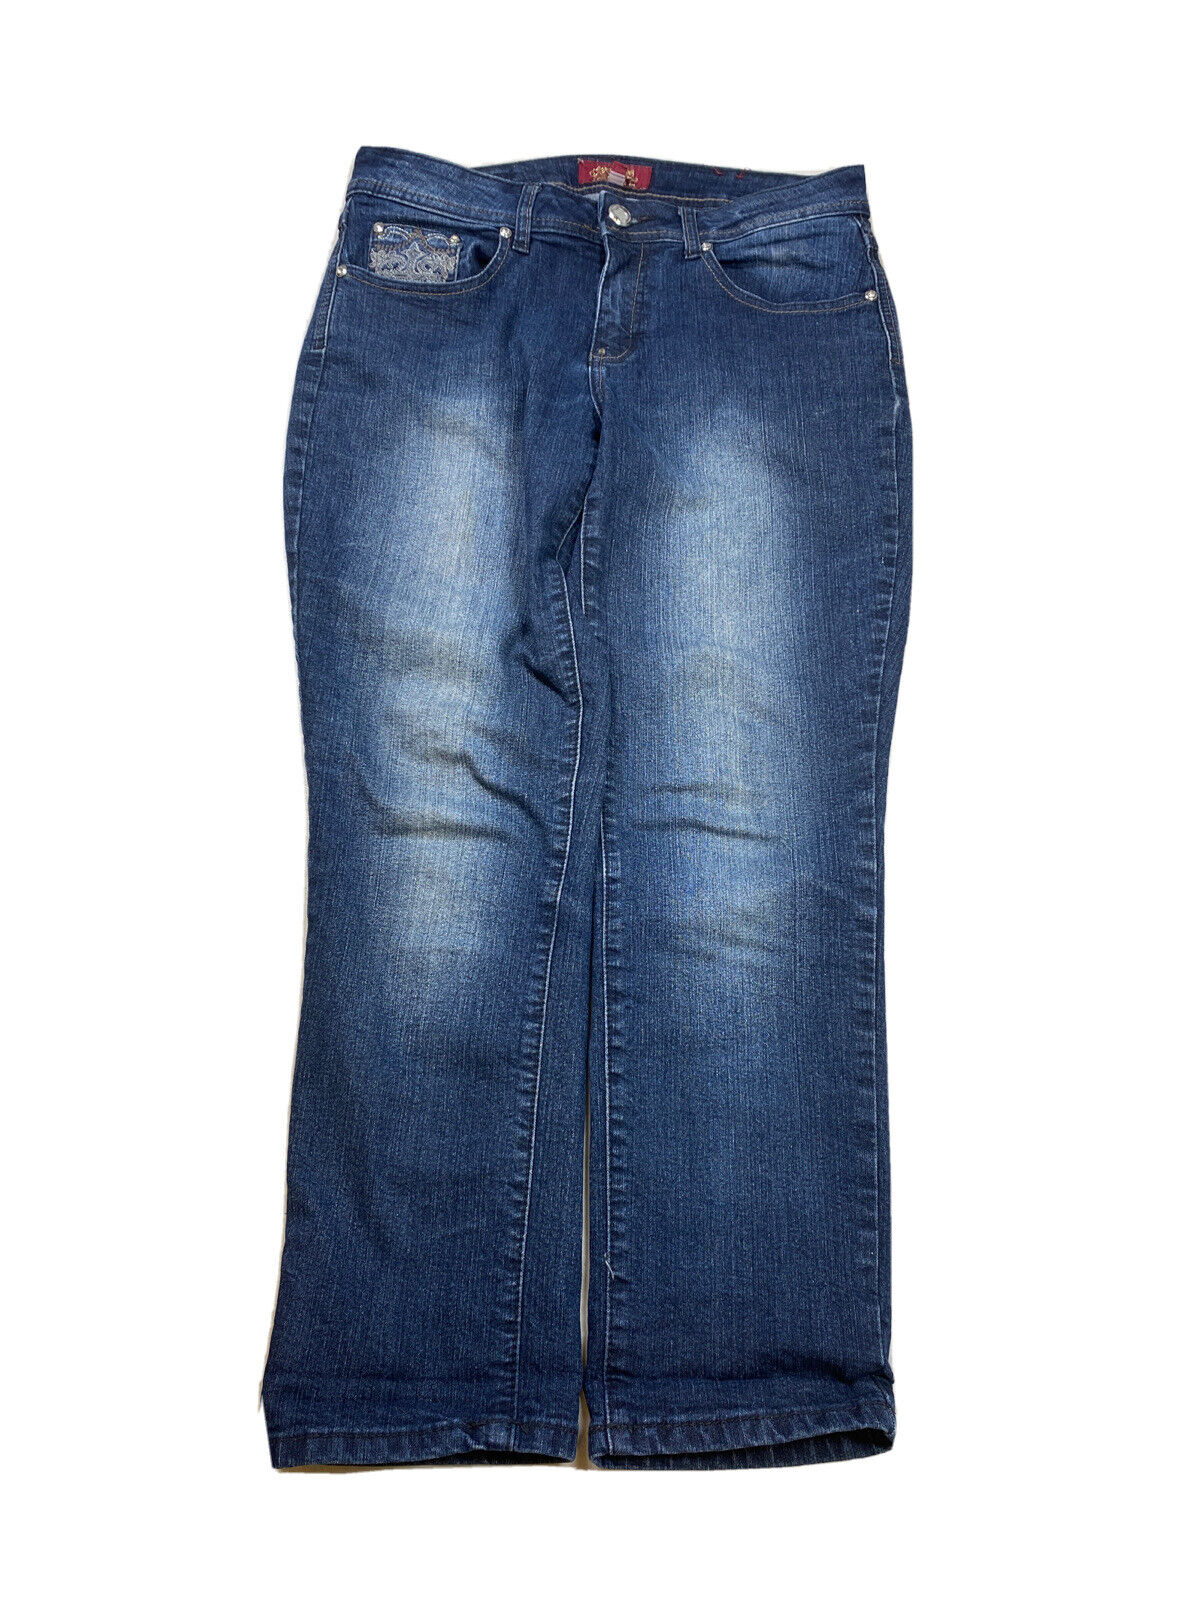 One5One Women's Dark Wash Stretch Skinny Denim Jeans - 8